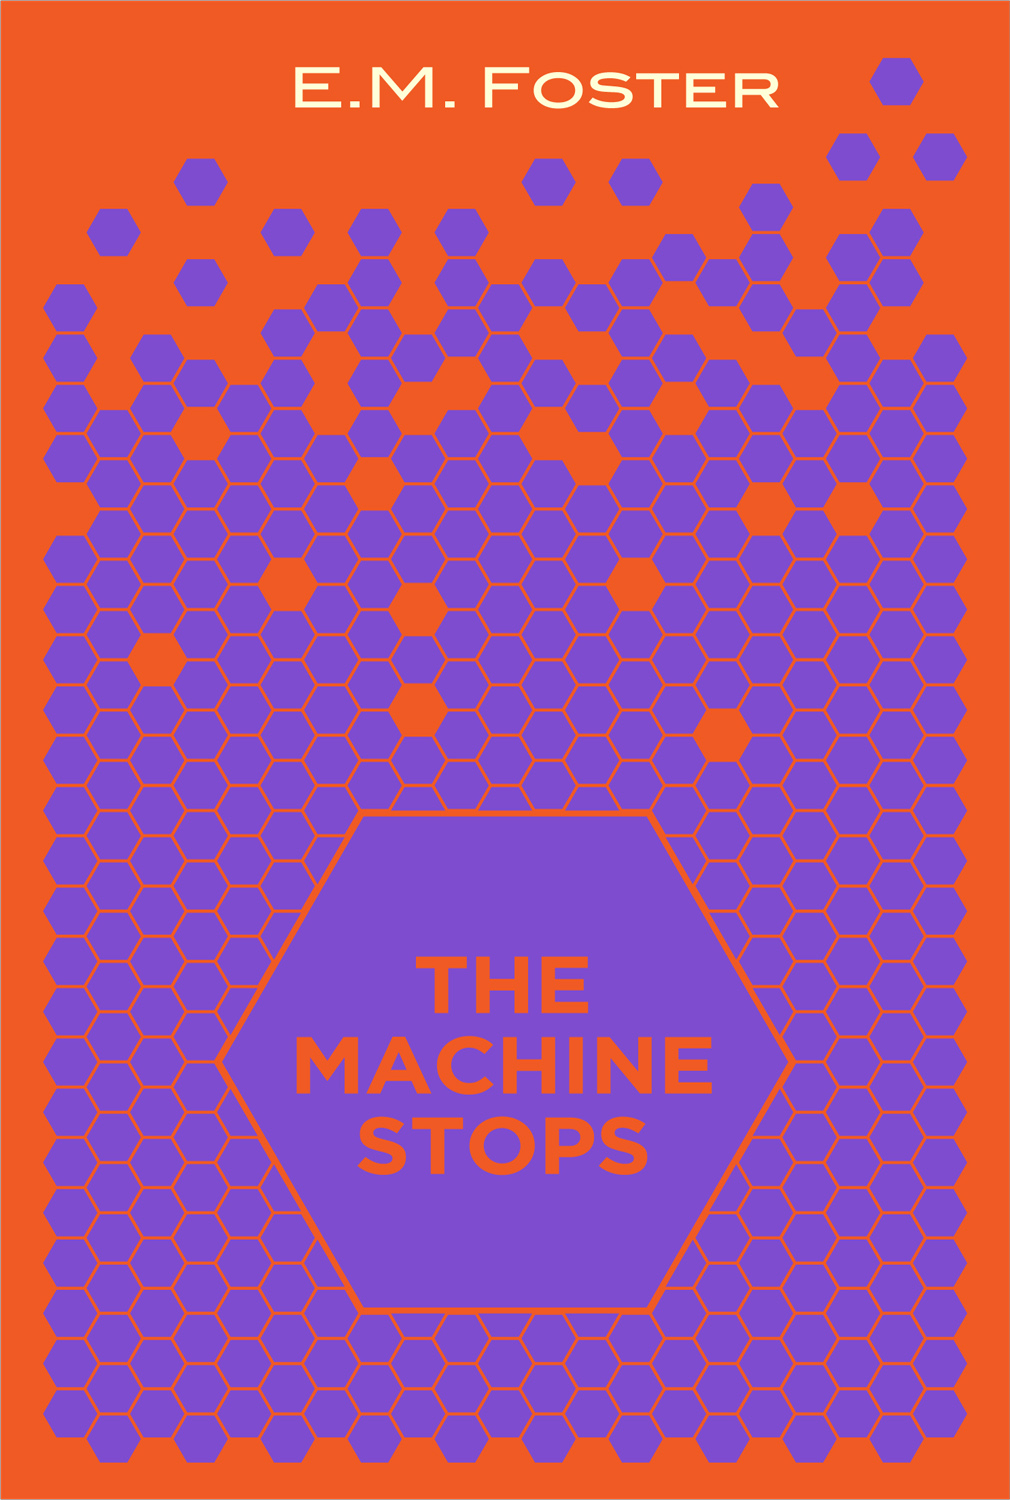 The machine stops, 1909, E.M. Foster